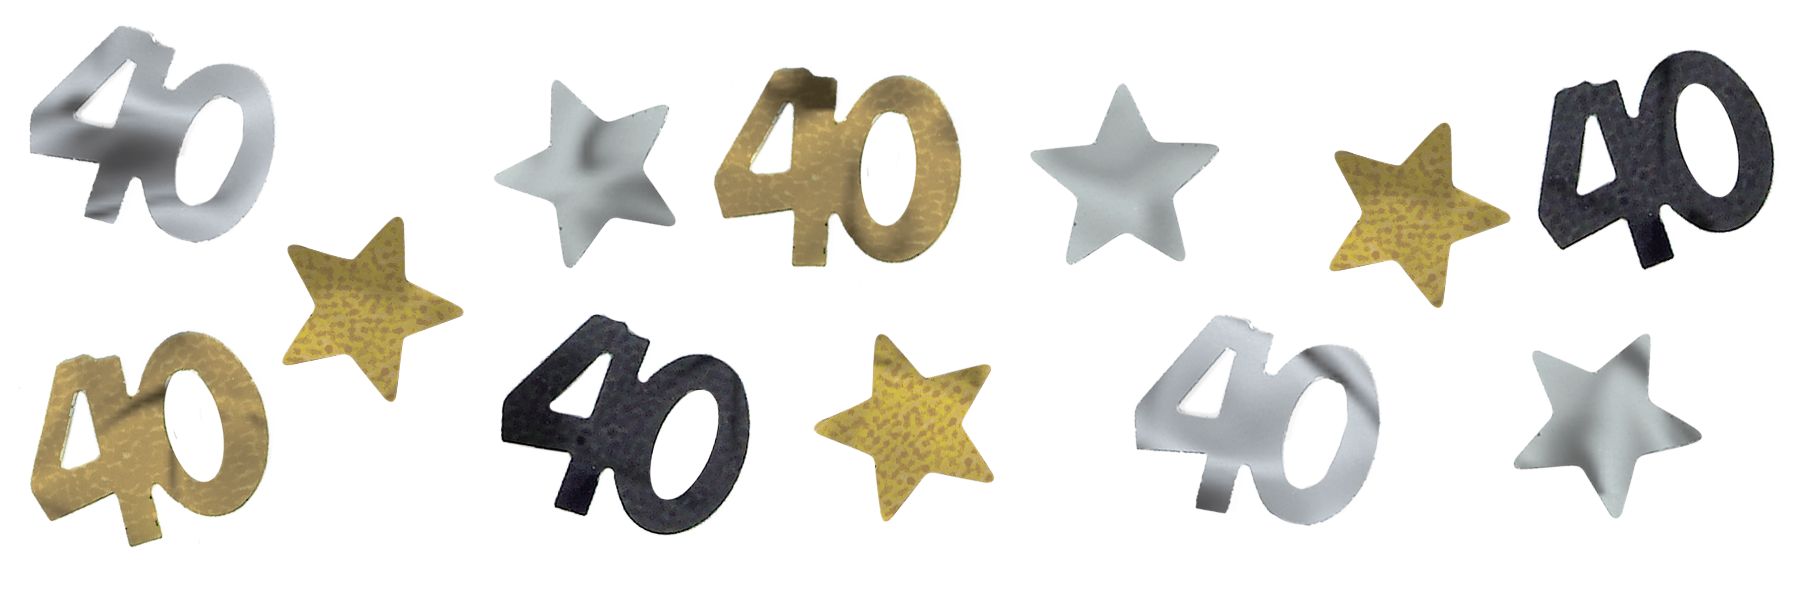 Confetti d'anniversaire étape 40e anniversaire, noir/argent/or